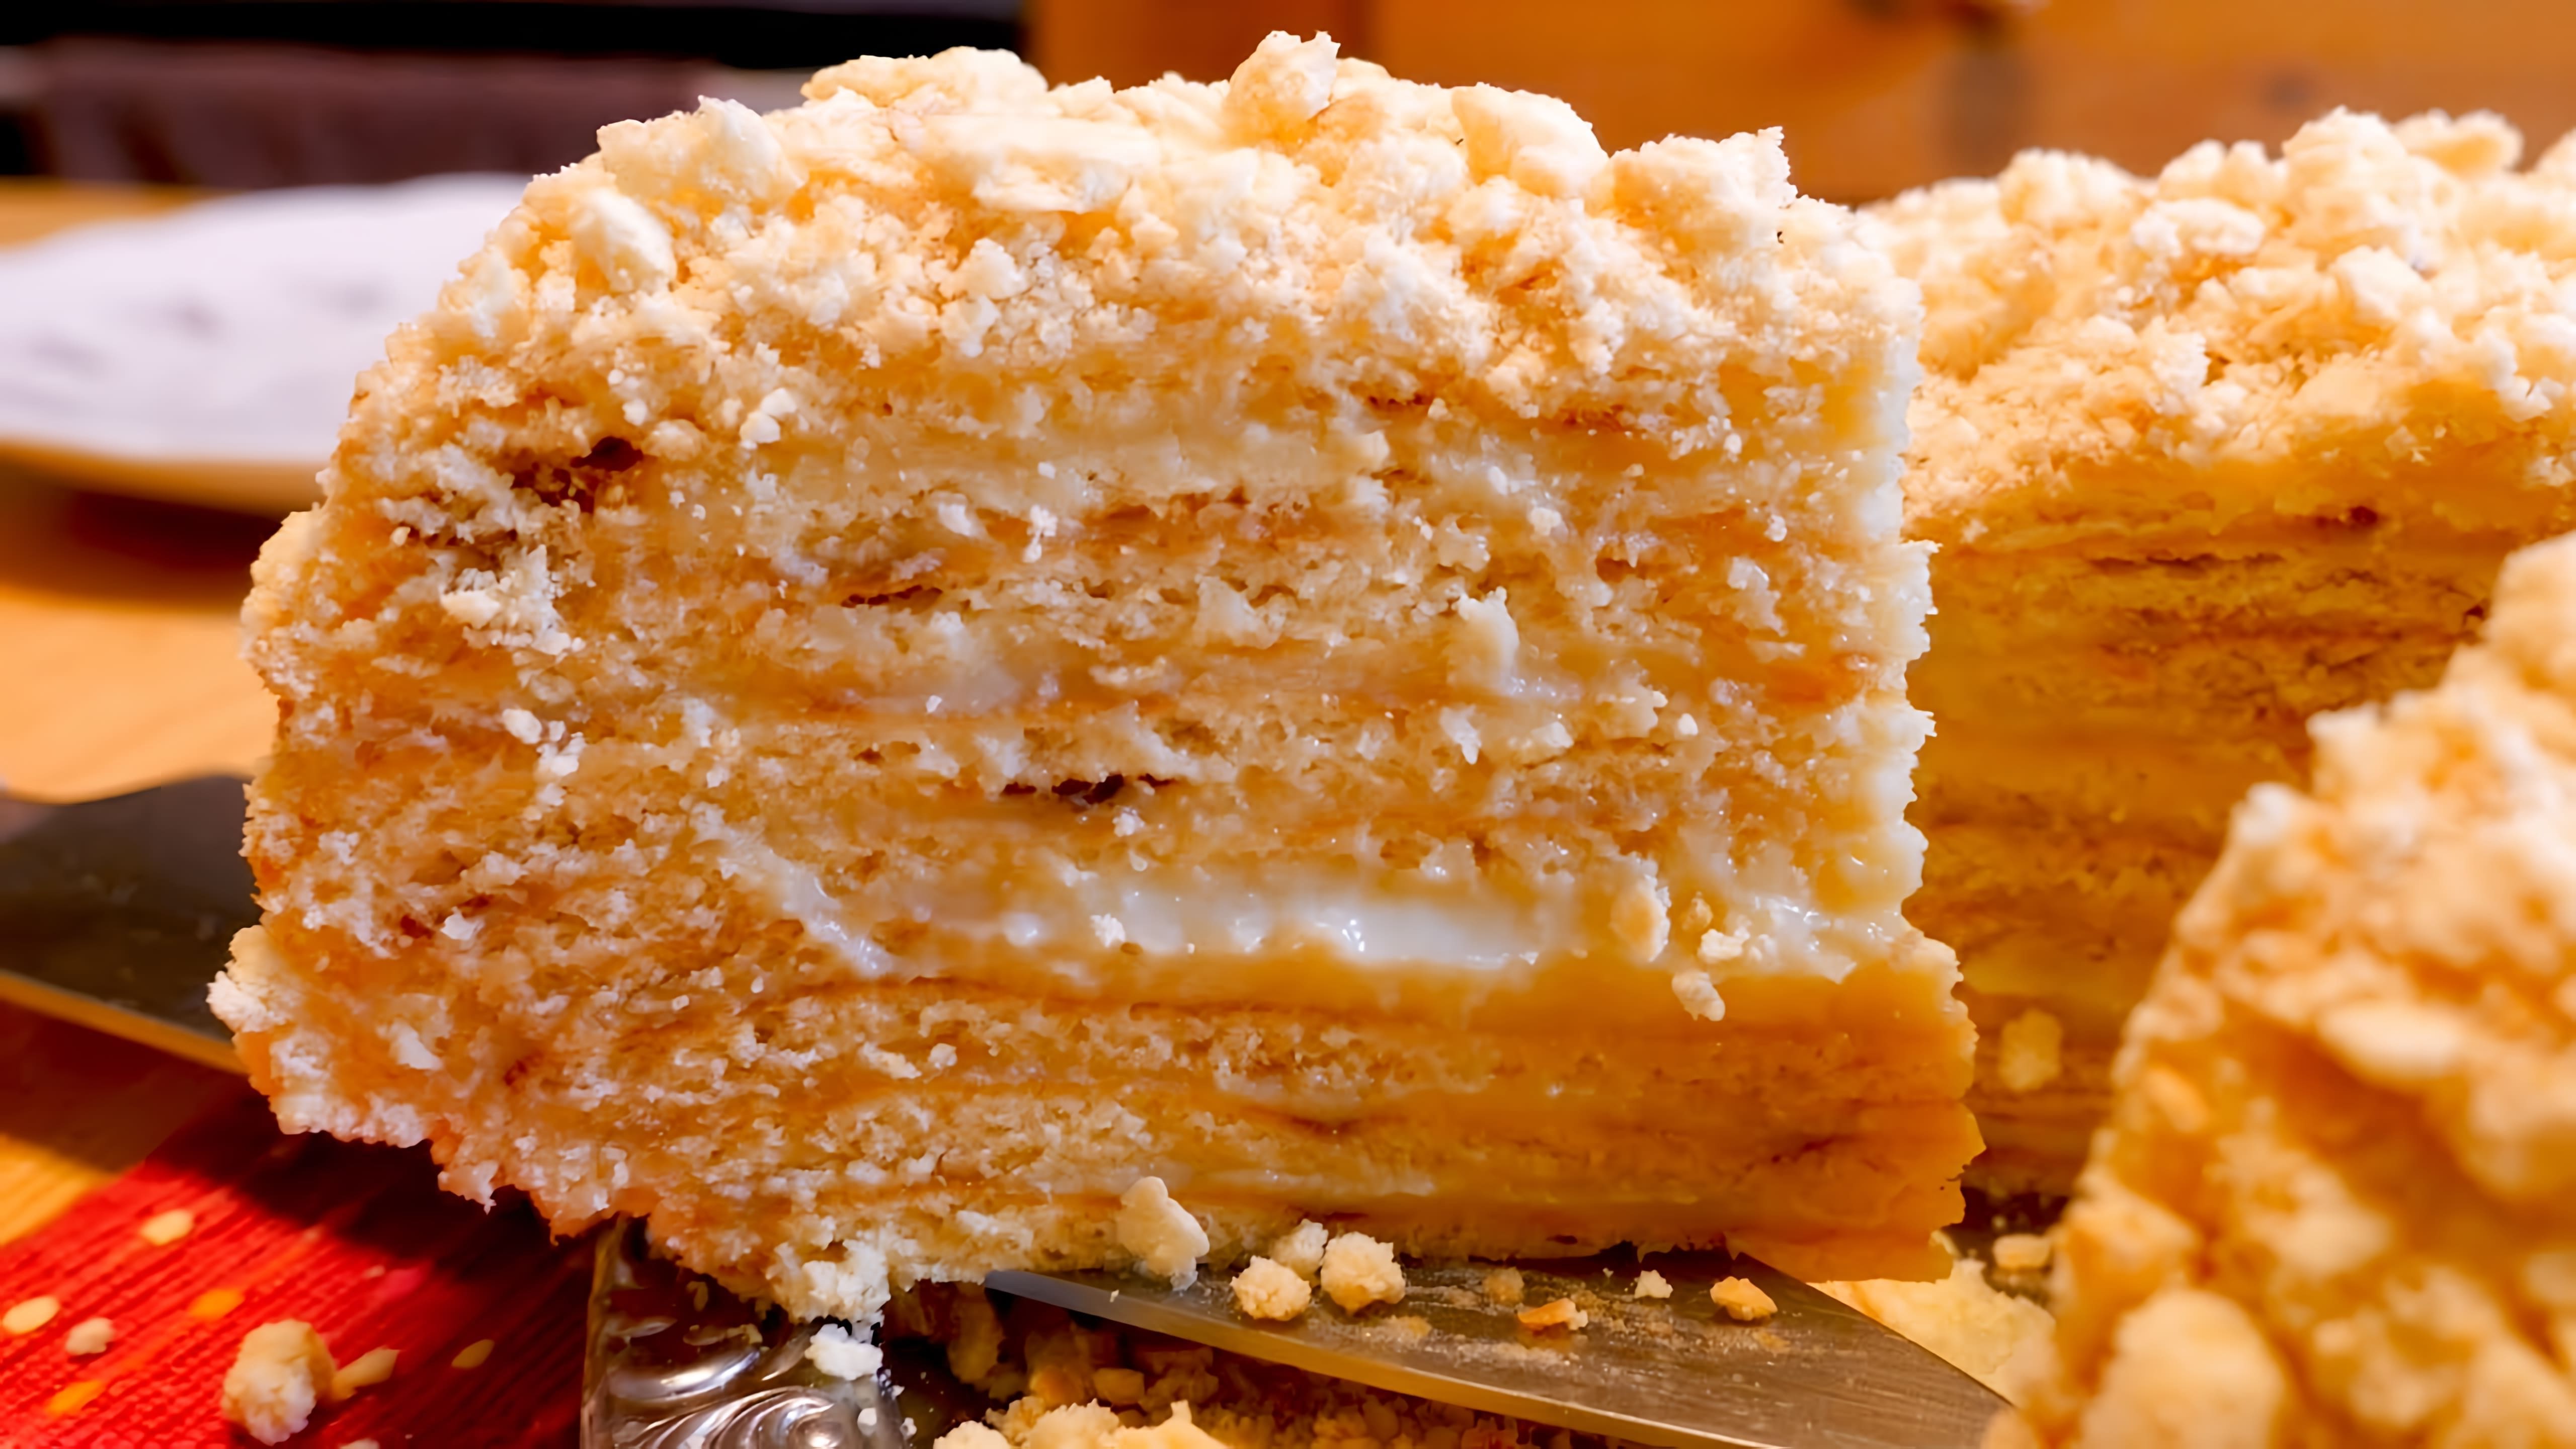 В этом видео демонстрируется процесс приготовления торта "Наполеон" на сковороде